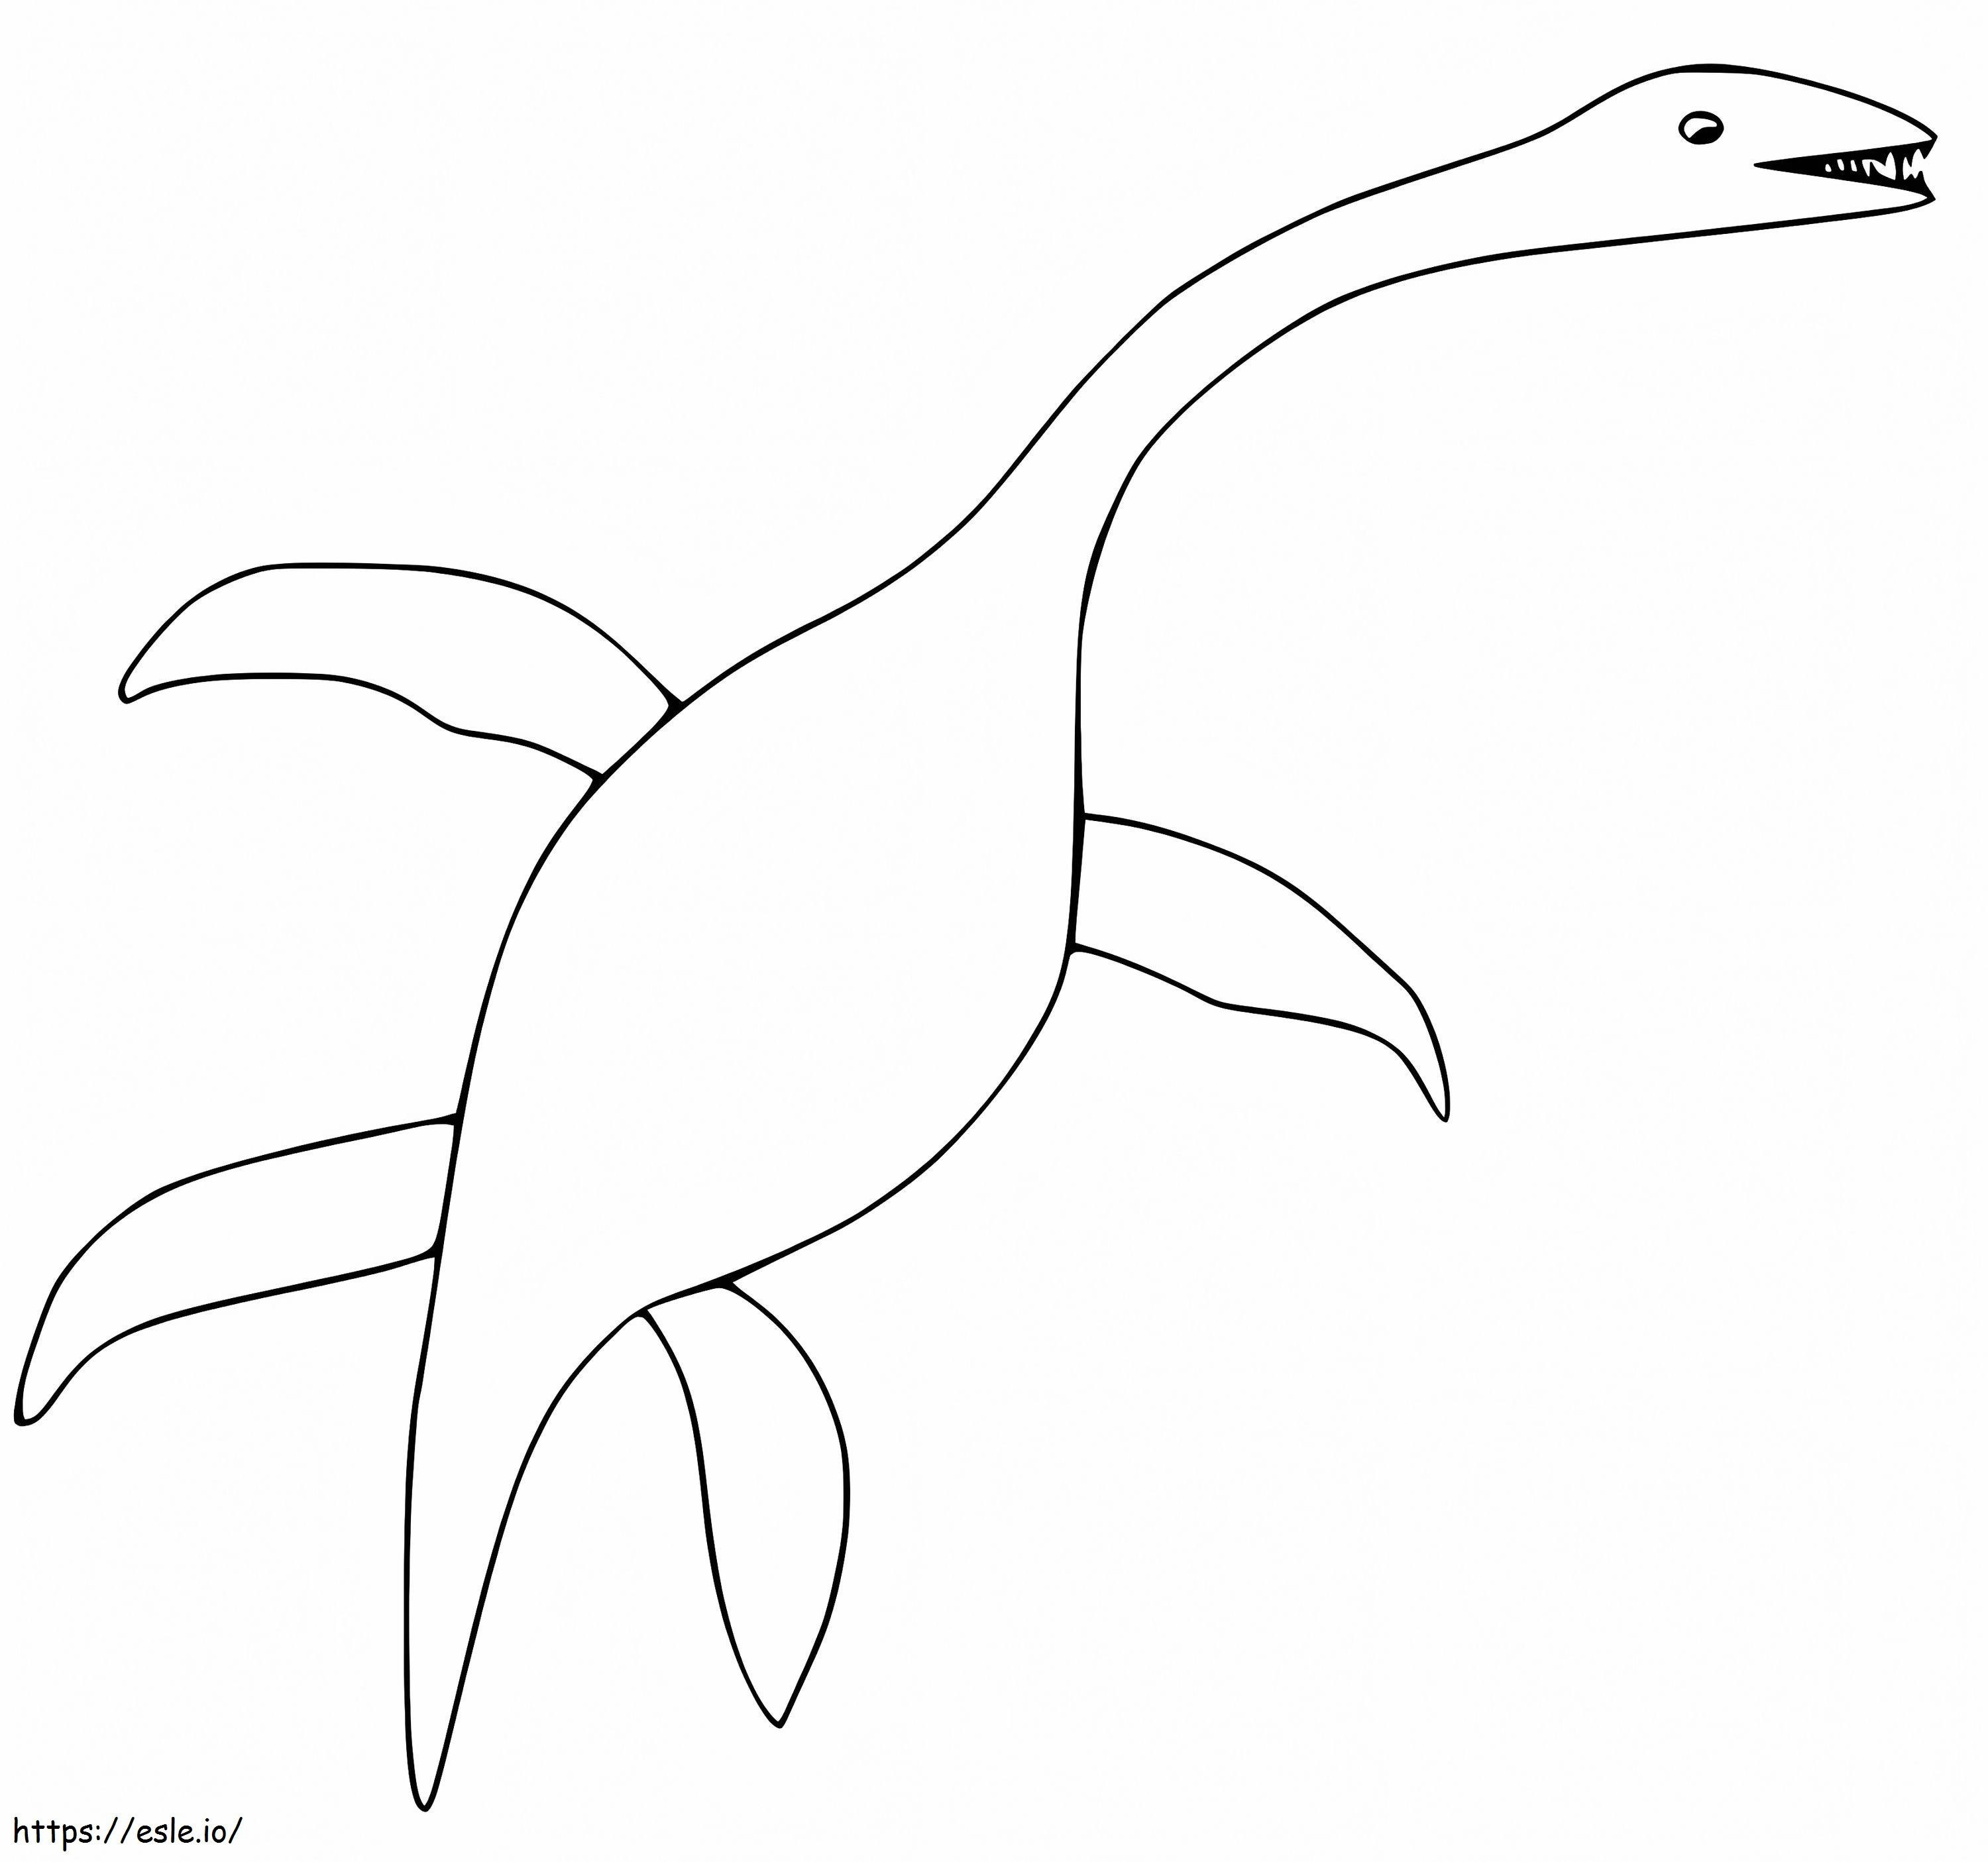 Plesiosaurio libre para colorear